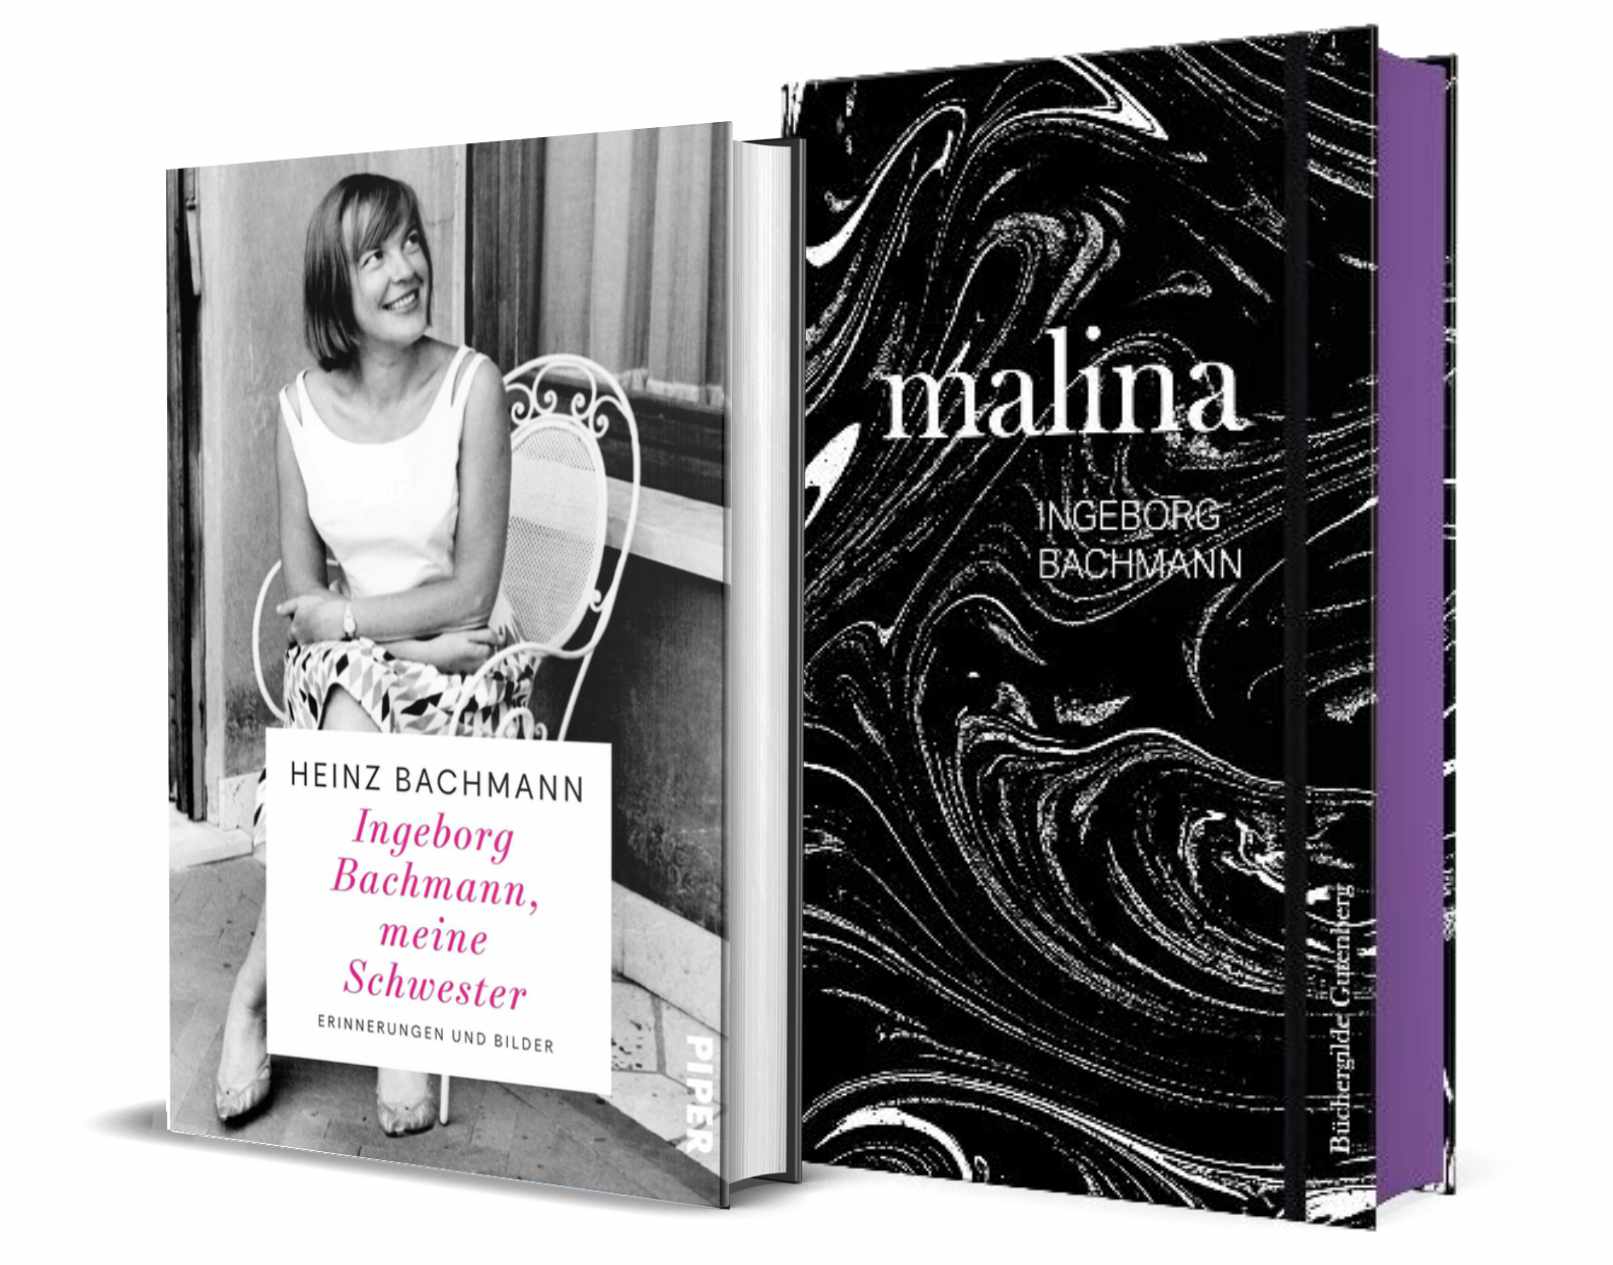 Die Gewinnpakte enthalten neben Tickets und Kinoplakat das Buch »Melina« (Büchergilde Gutenberg) oder»Ingeborg Bachmann, meine Schwester« von Heinz Bachmann